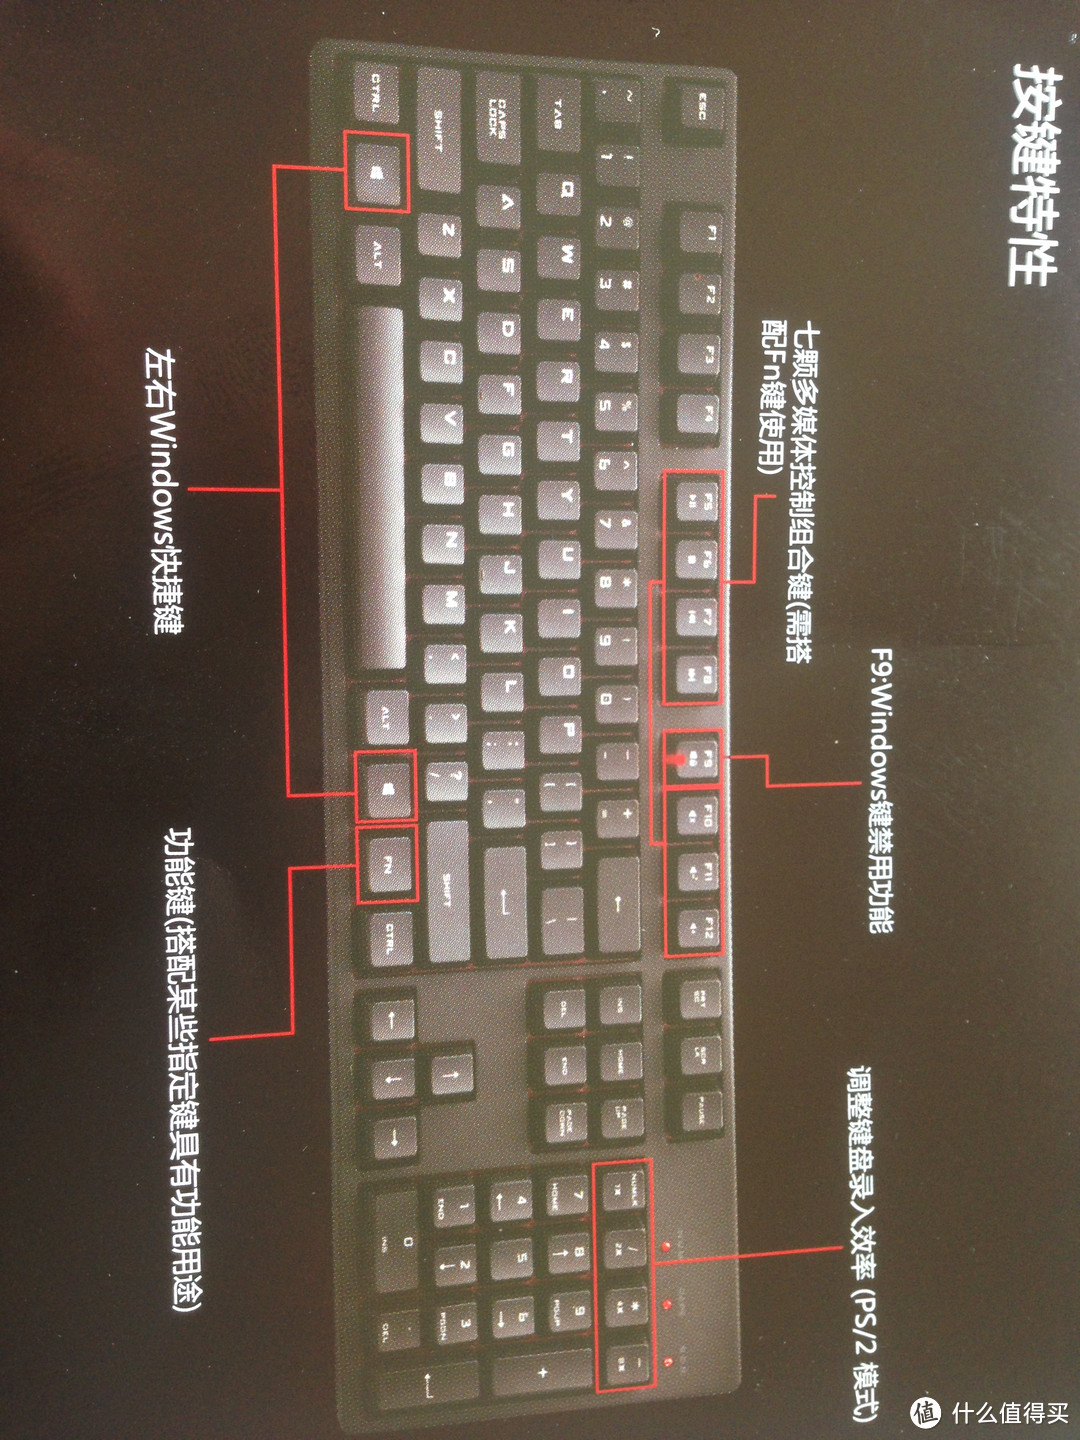 #原创新人# 新人的首个机械键盘晒单： CoolerMaster 酷冷至尊 烈焰枪 XT版 茶轴 机械键盘